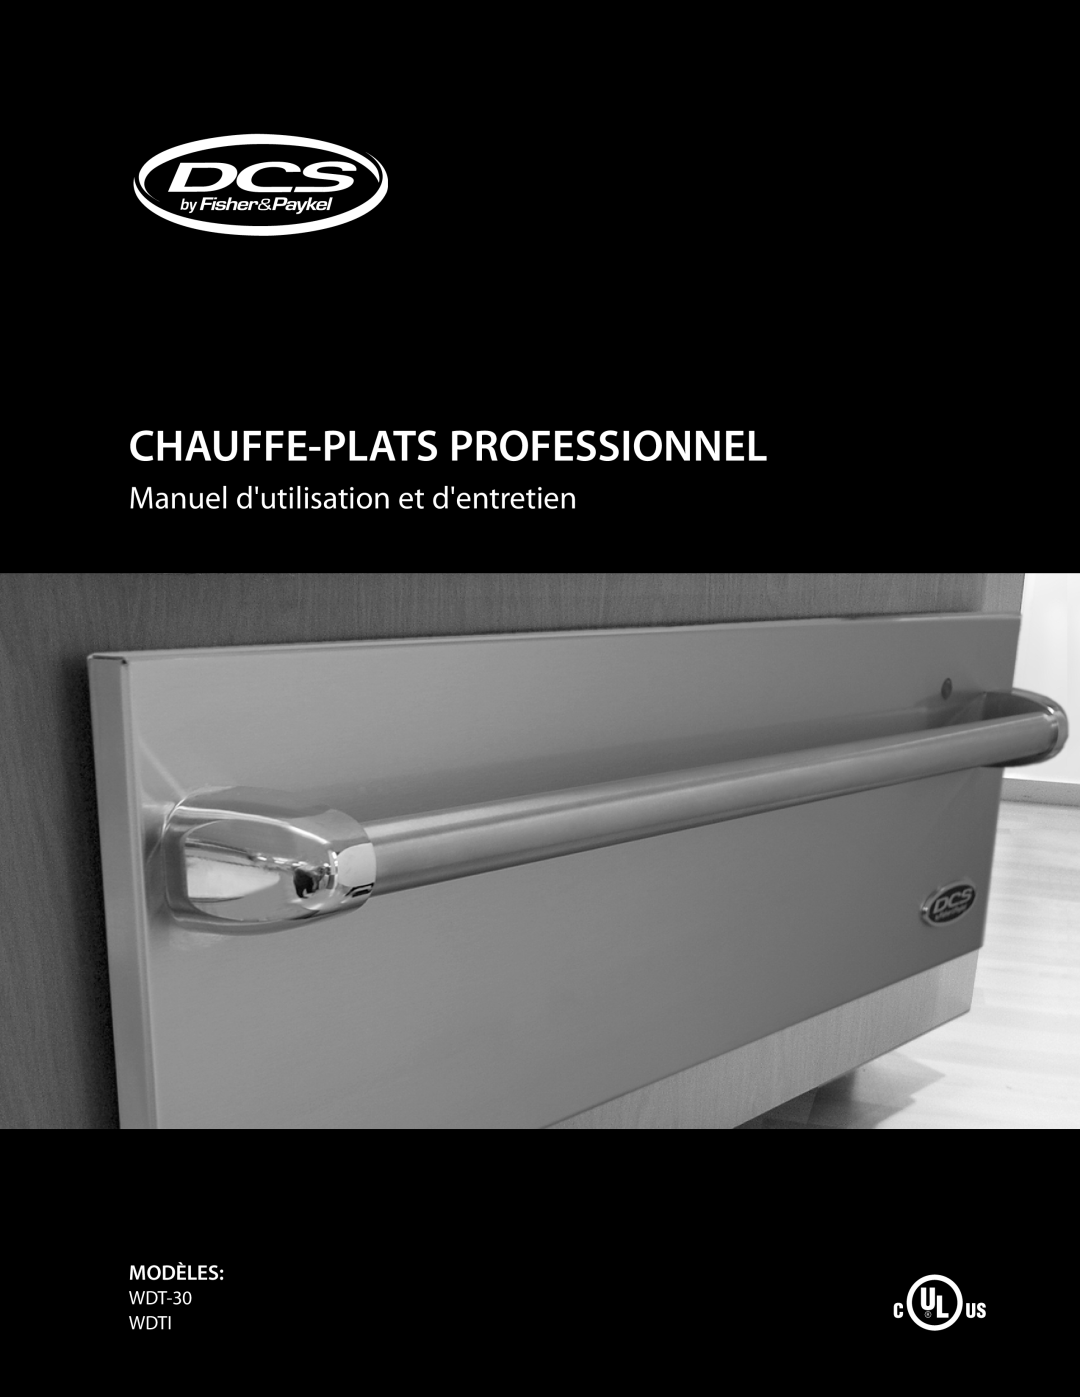 DCS manual Chauffe-Plats Professionnel, Manuel dutilisation et dentretien, Modèles, WDT-30 WDTI 